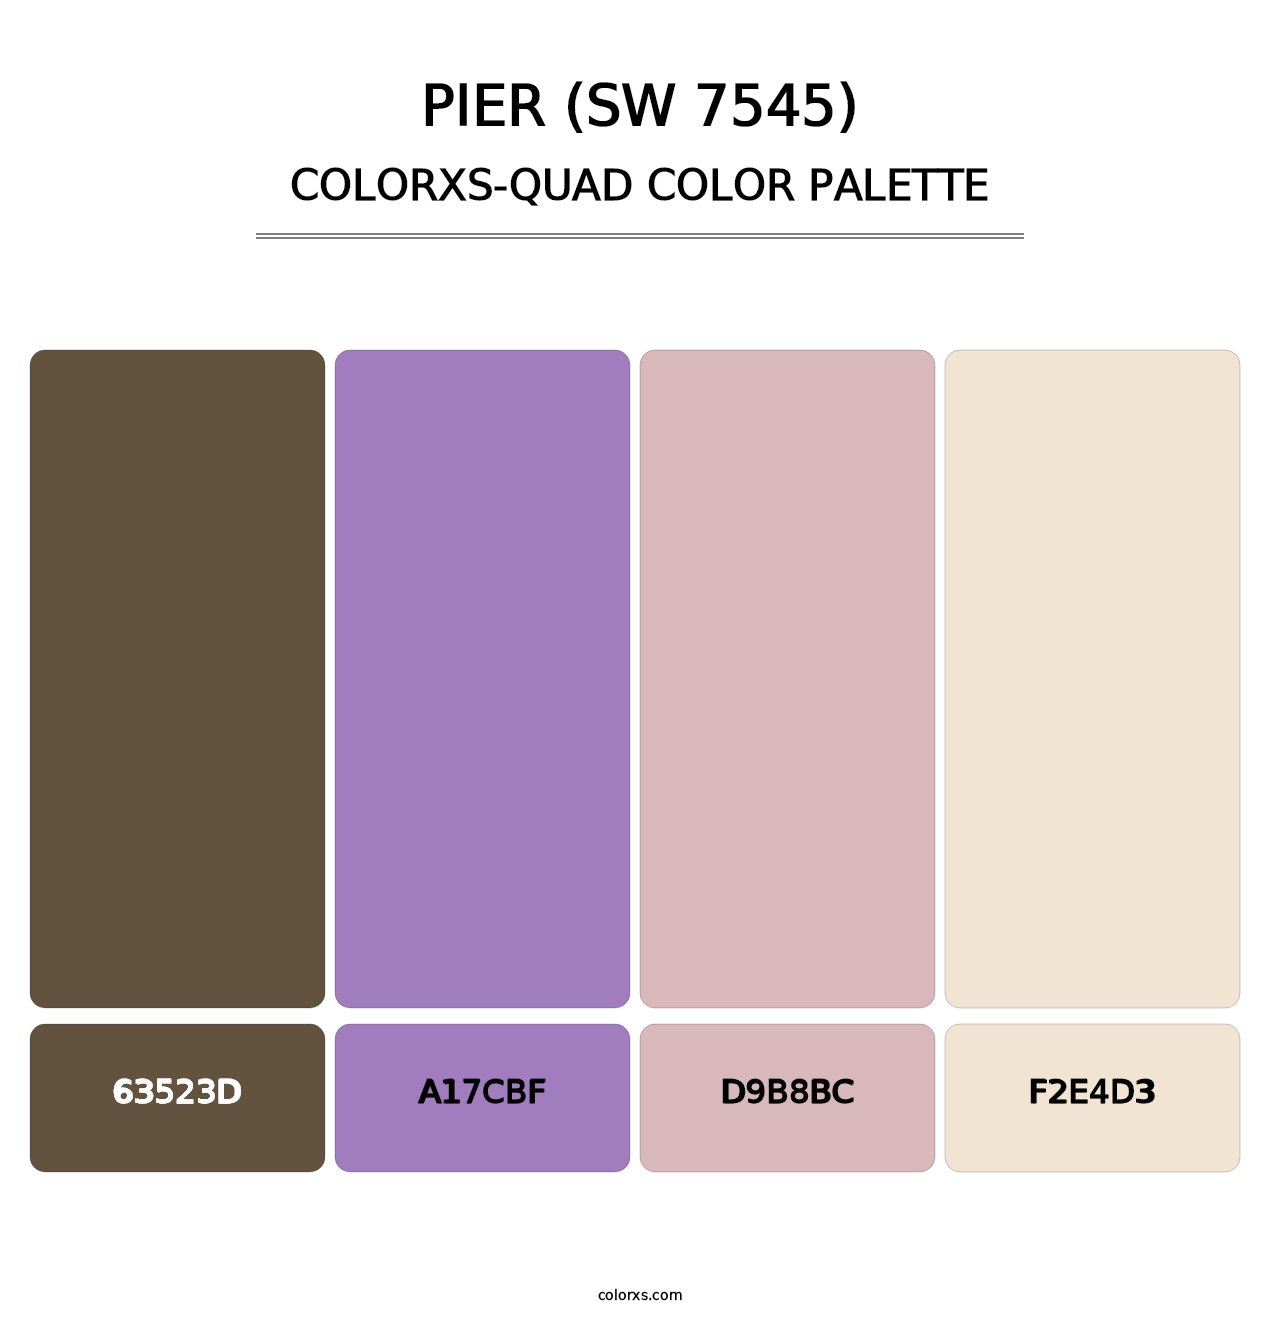 Pier (SW 7545) - Colorxs Quad Palette